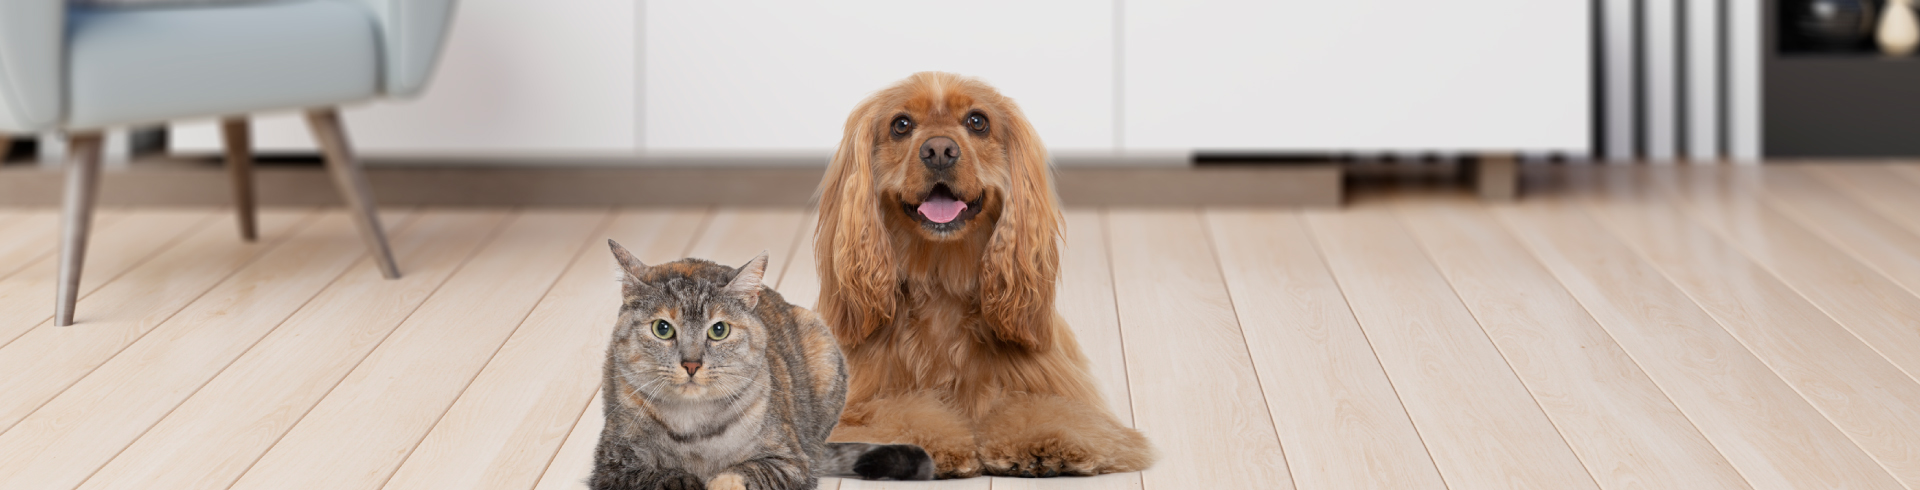 6 diferencias entre gatos y perros